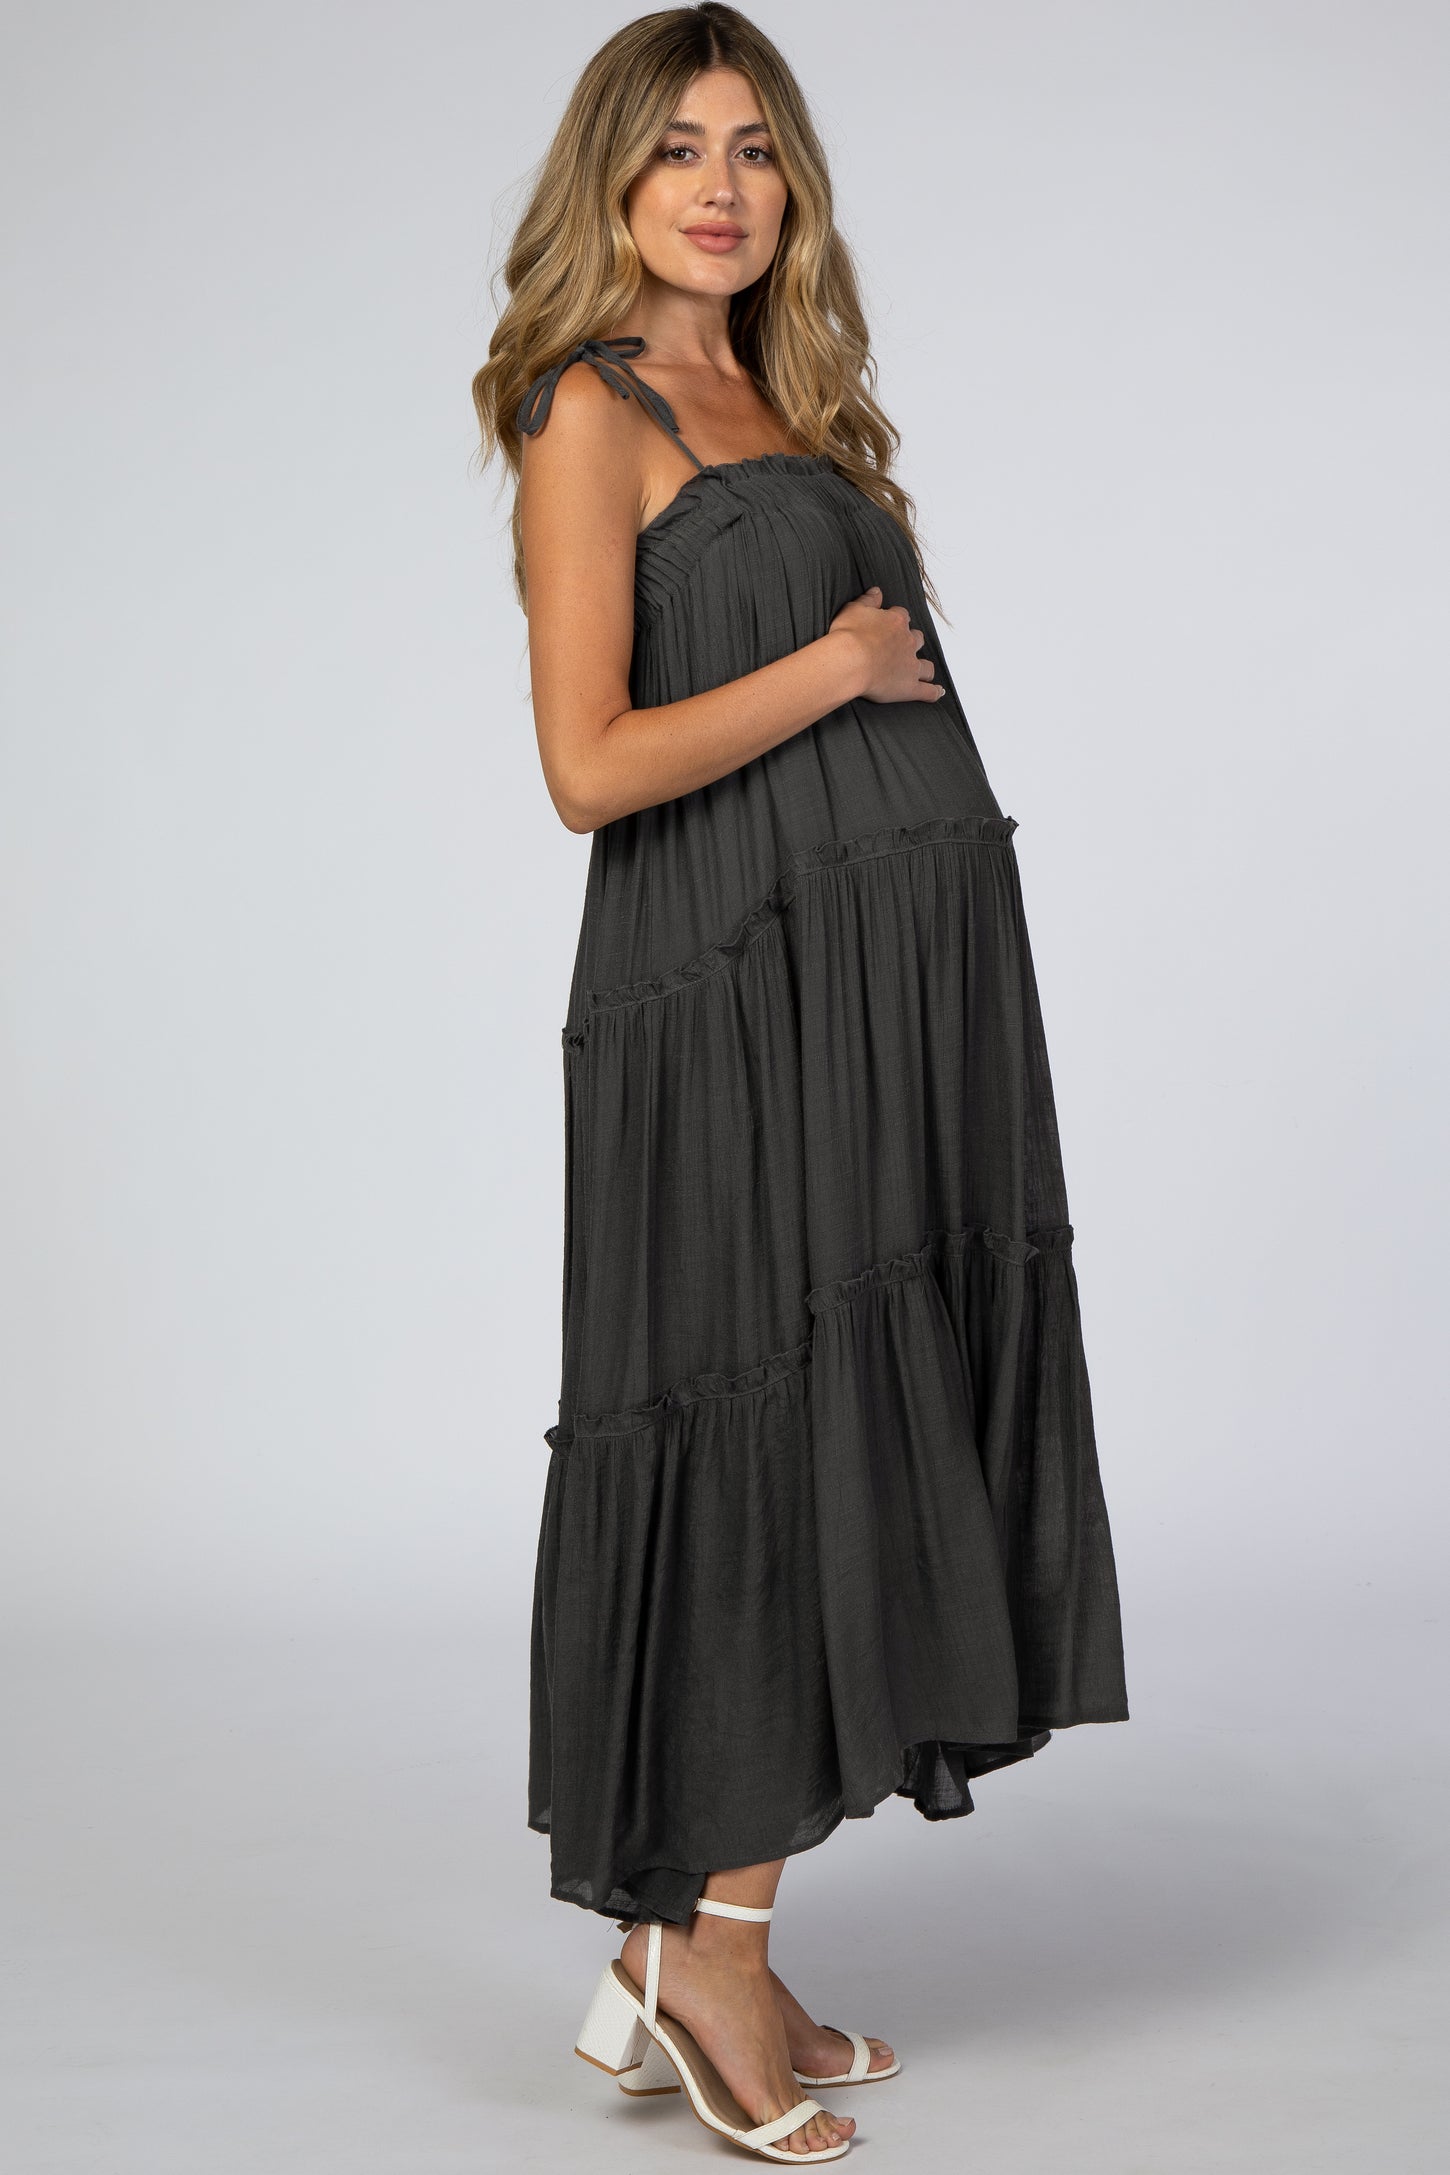 Charcoal Tie Strap Ruffle Maternity Maxi Dress– PinkBlush